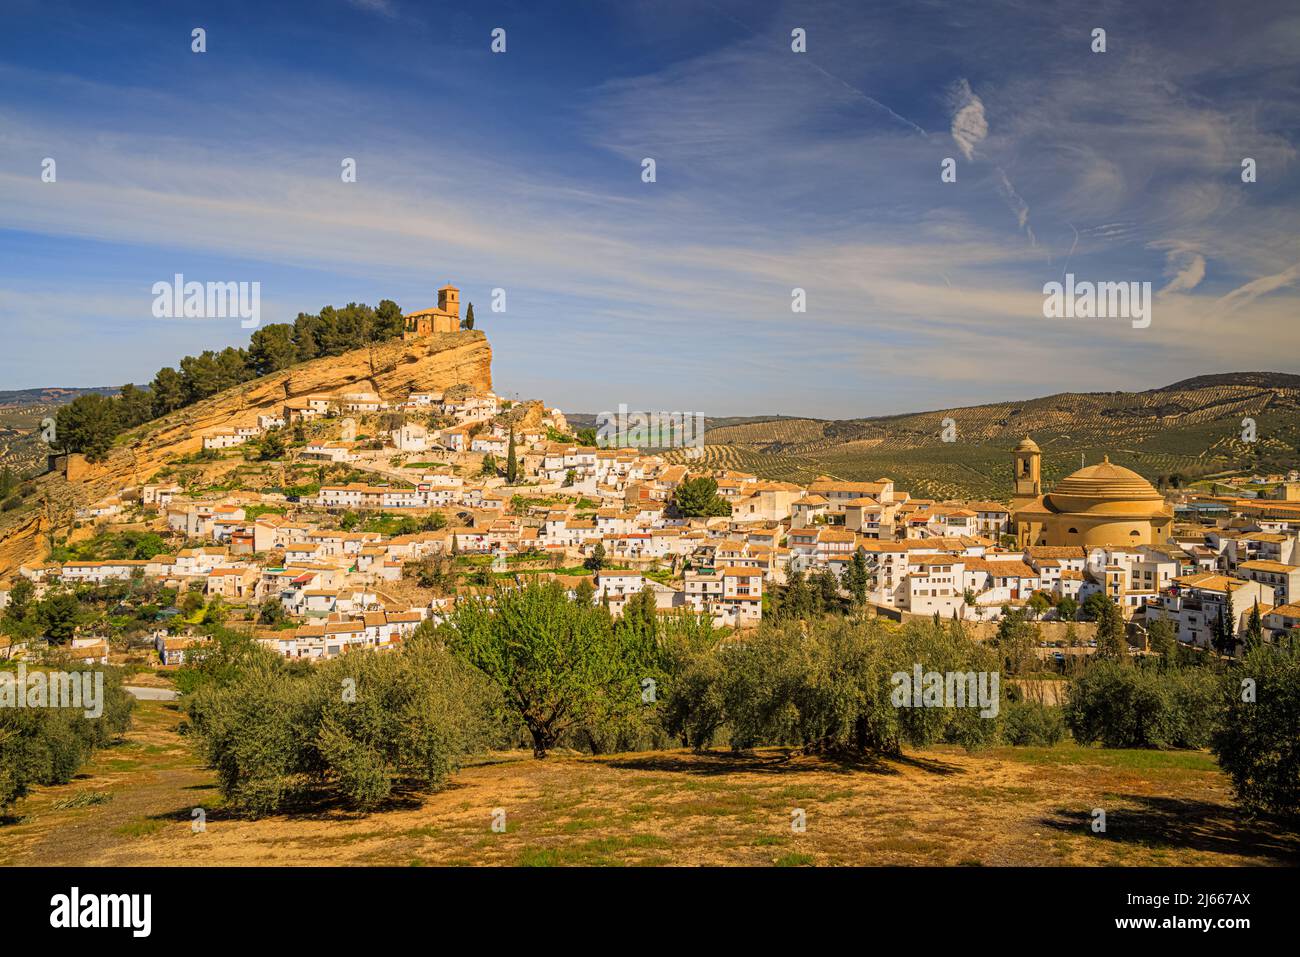 Montefrio ist eine Gemeinde in der Provinz Granada. Die Ruinen einer maurischen Burg befinden sich in der Nähe des höchsten Punktes. Gebaut auf halbem Weg zwischen dem Sierr Stockfoto